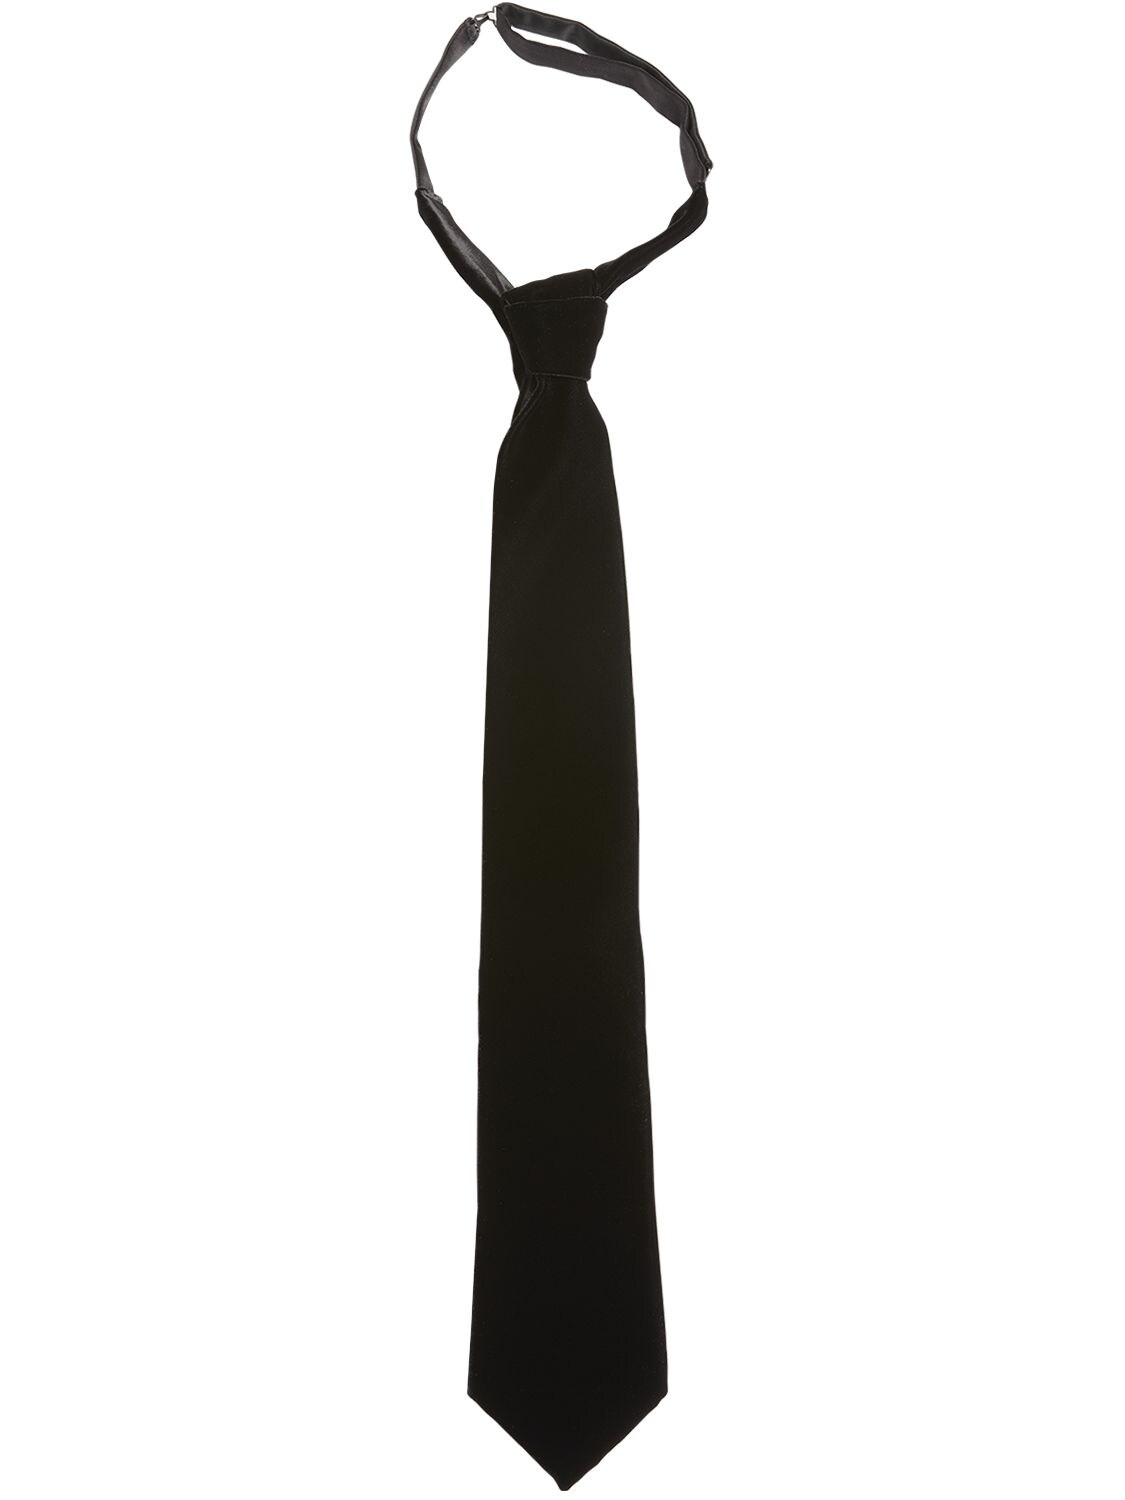 Cravate En Maille De Soie 7,5 Cm Soie Tom Ford pour homme en coloris Noir Homme Accessoires Cravates 